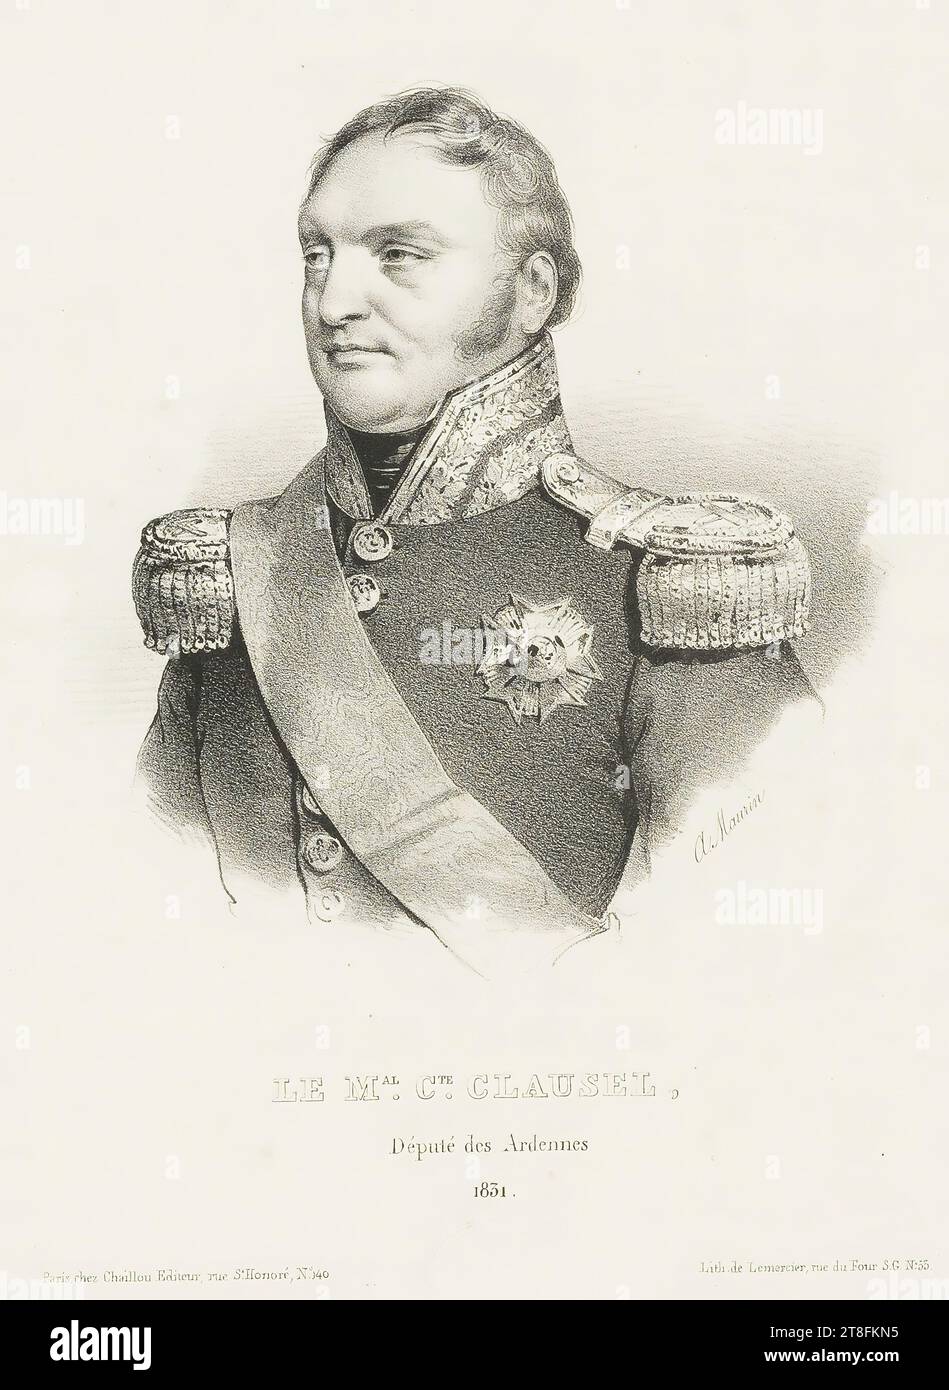 A.Maurin. LE M.al C.te CLAUSEL, Deputy of the Ardennes, 1851. Paris at Chaillou, Publisher, rue St. Honoré, N°. 40. Lit. de Lemercier, rue du Four S.G. N°.55 Stock Photo